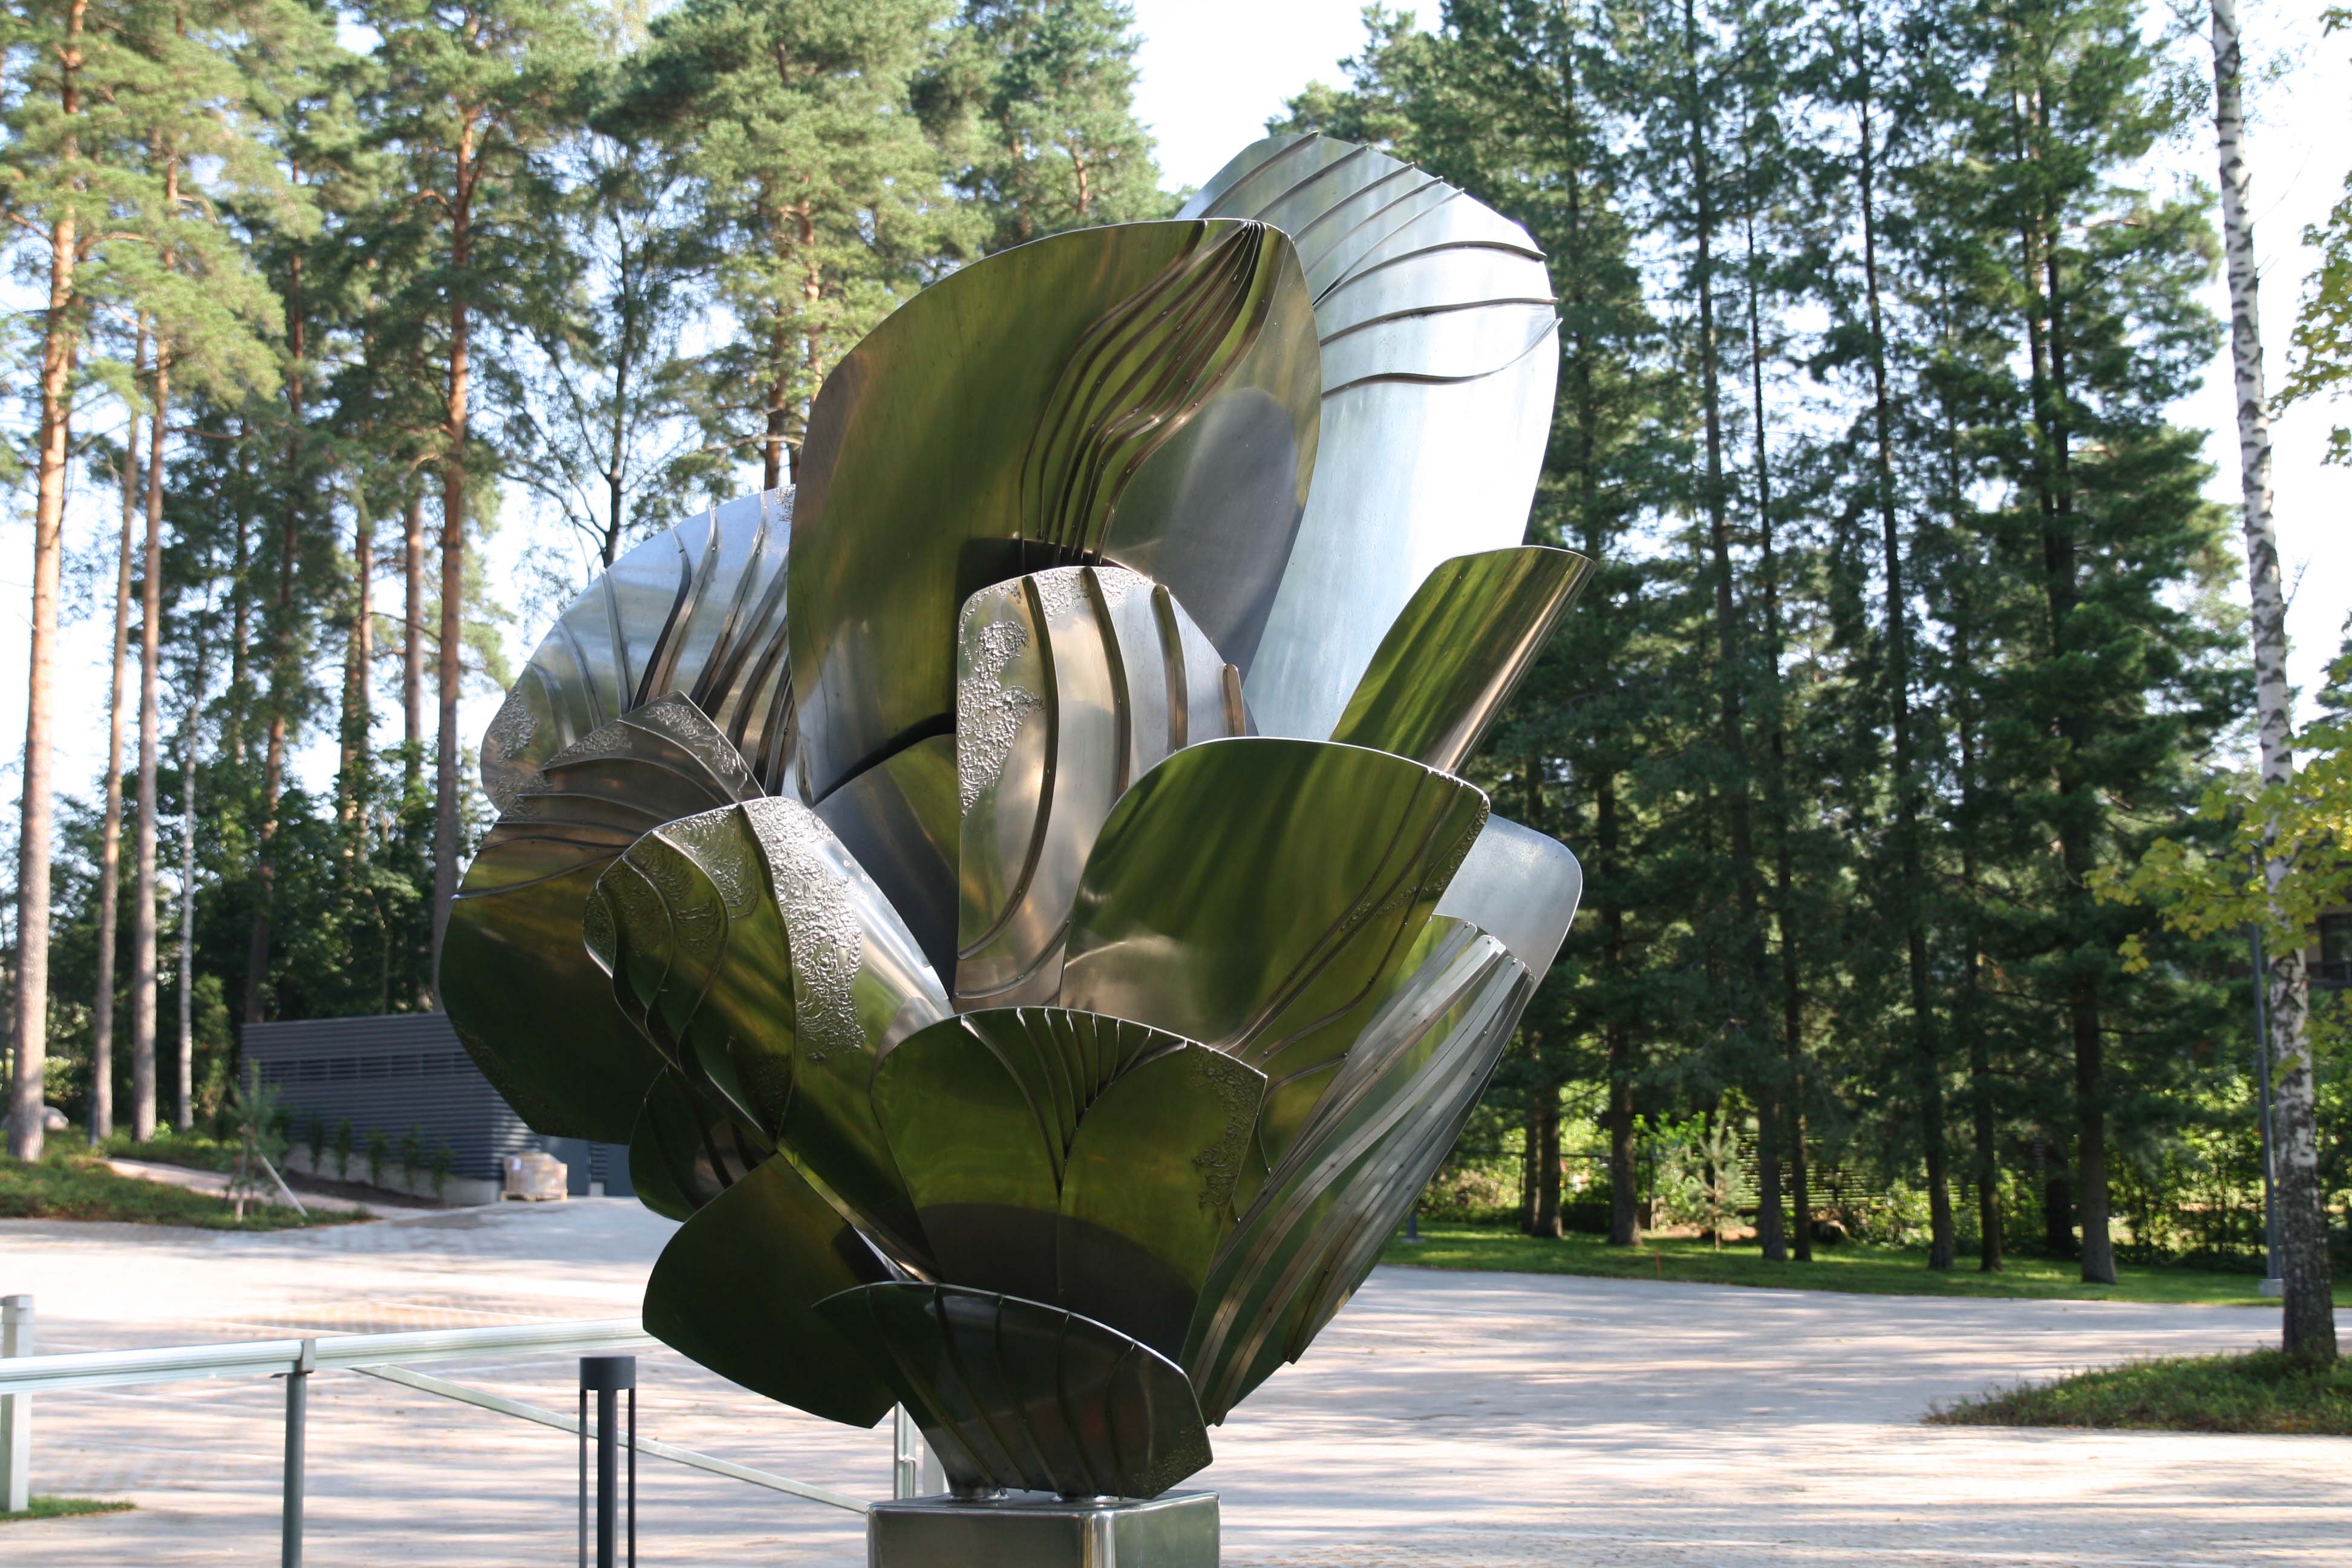 A sculpture in the Didrichsen Art museum garden